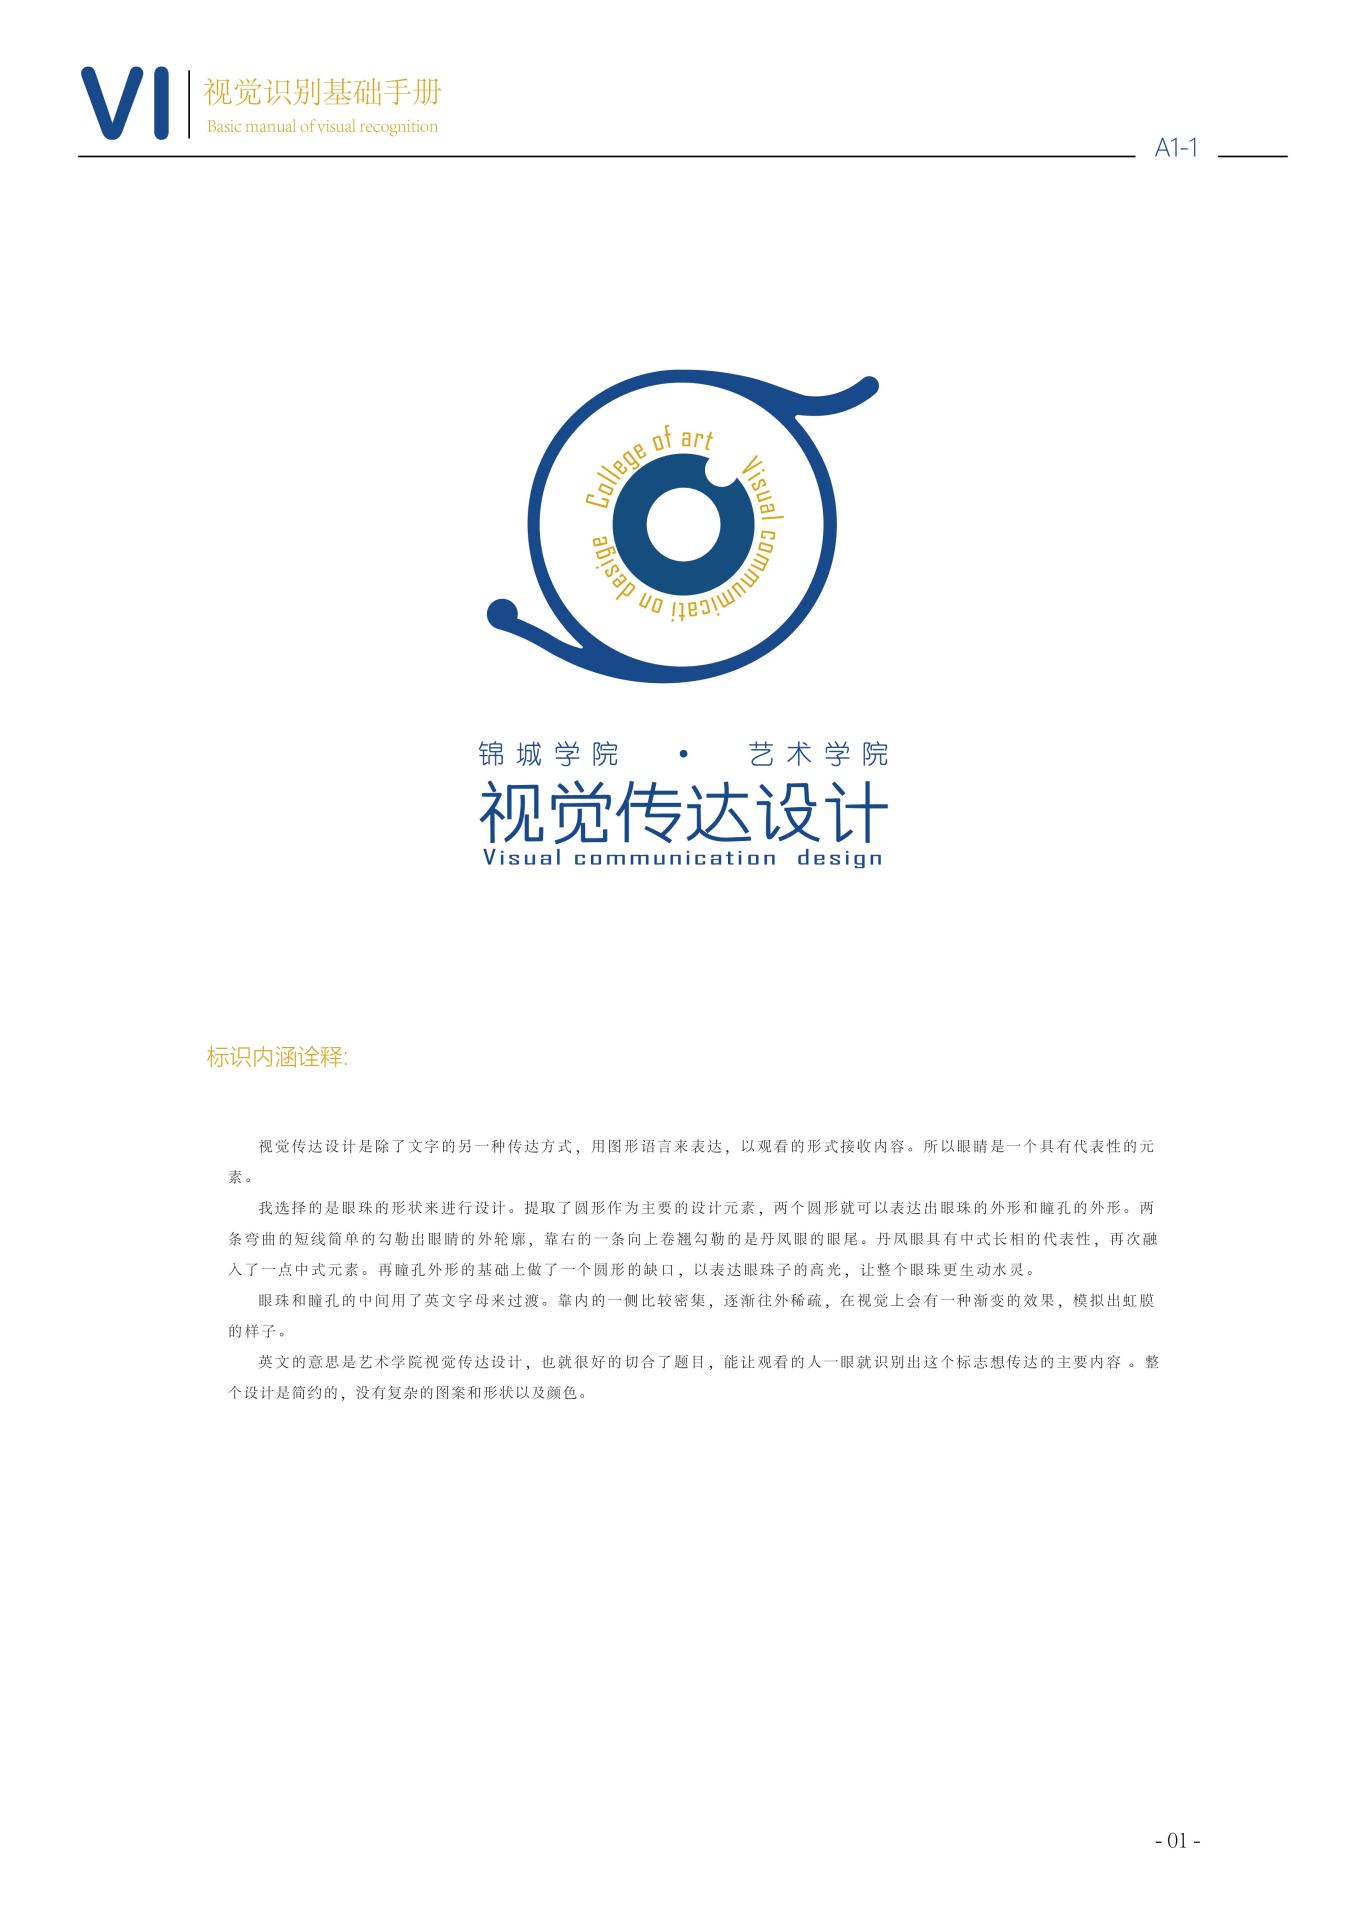 視覺傳達logo設計圖4